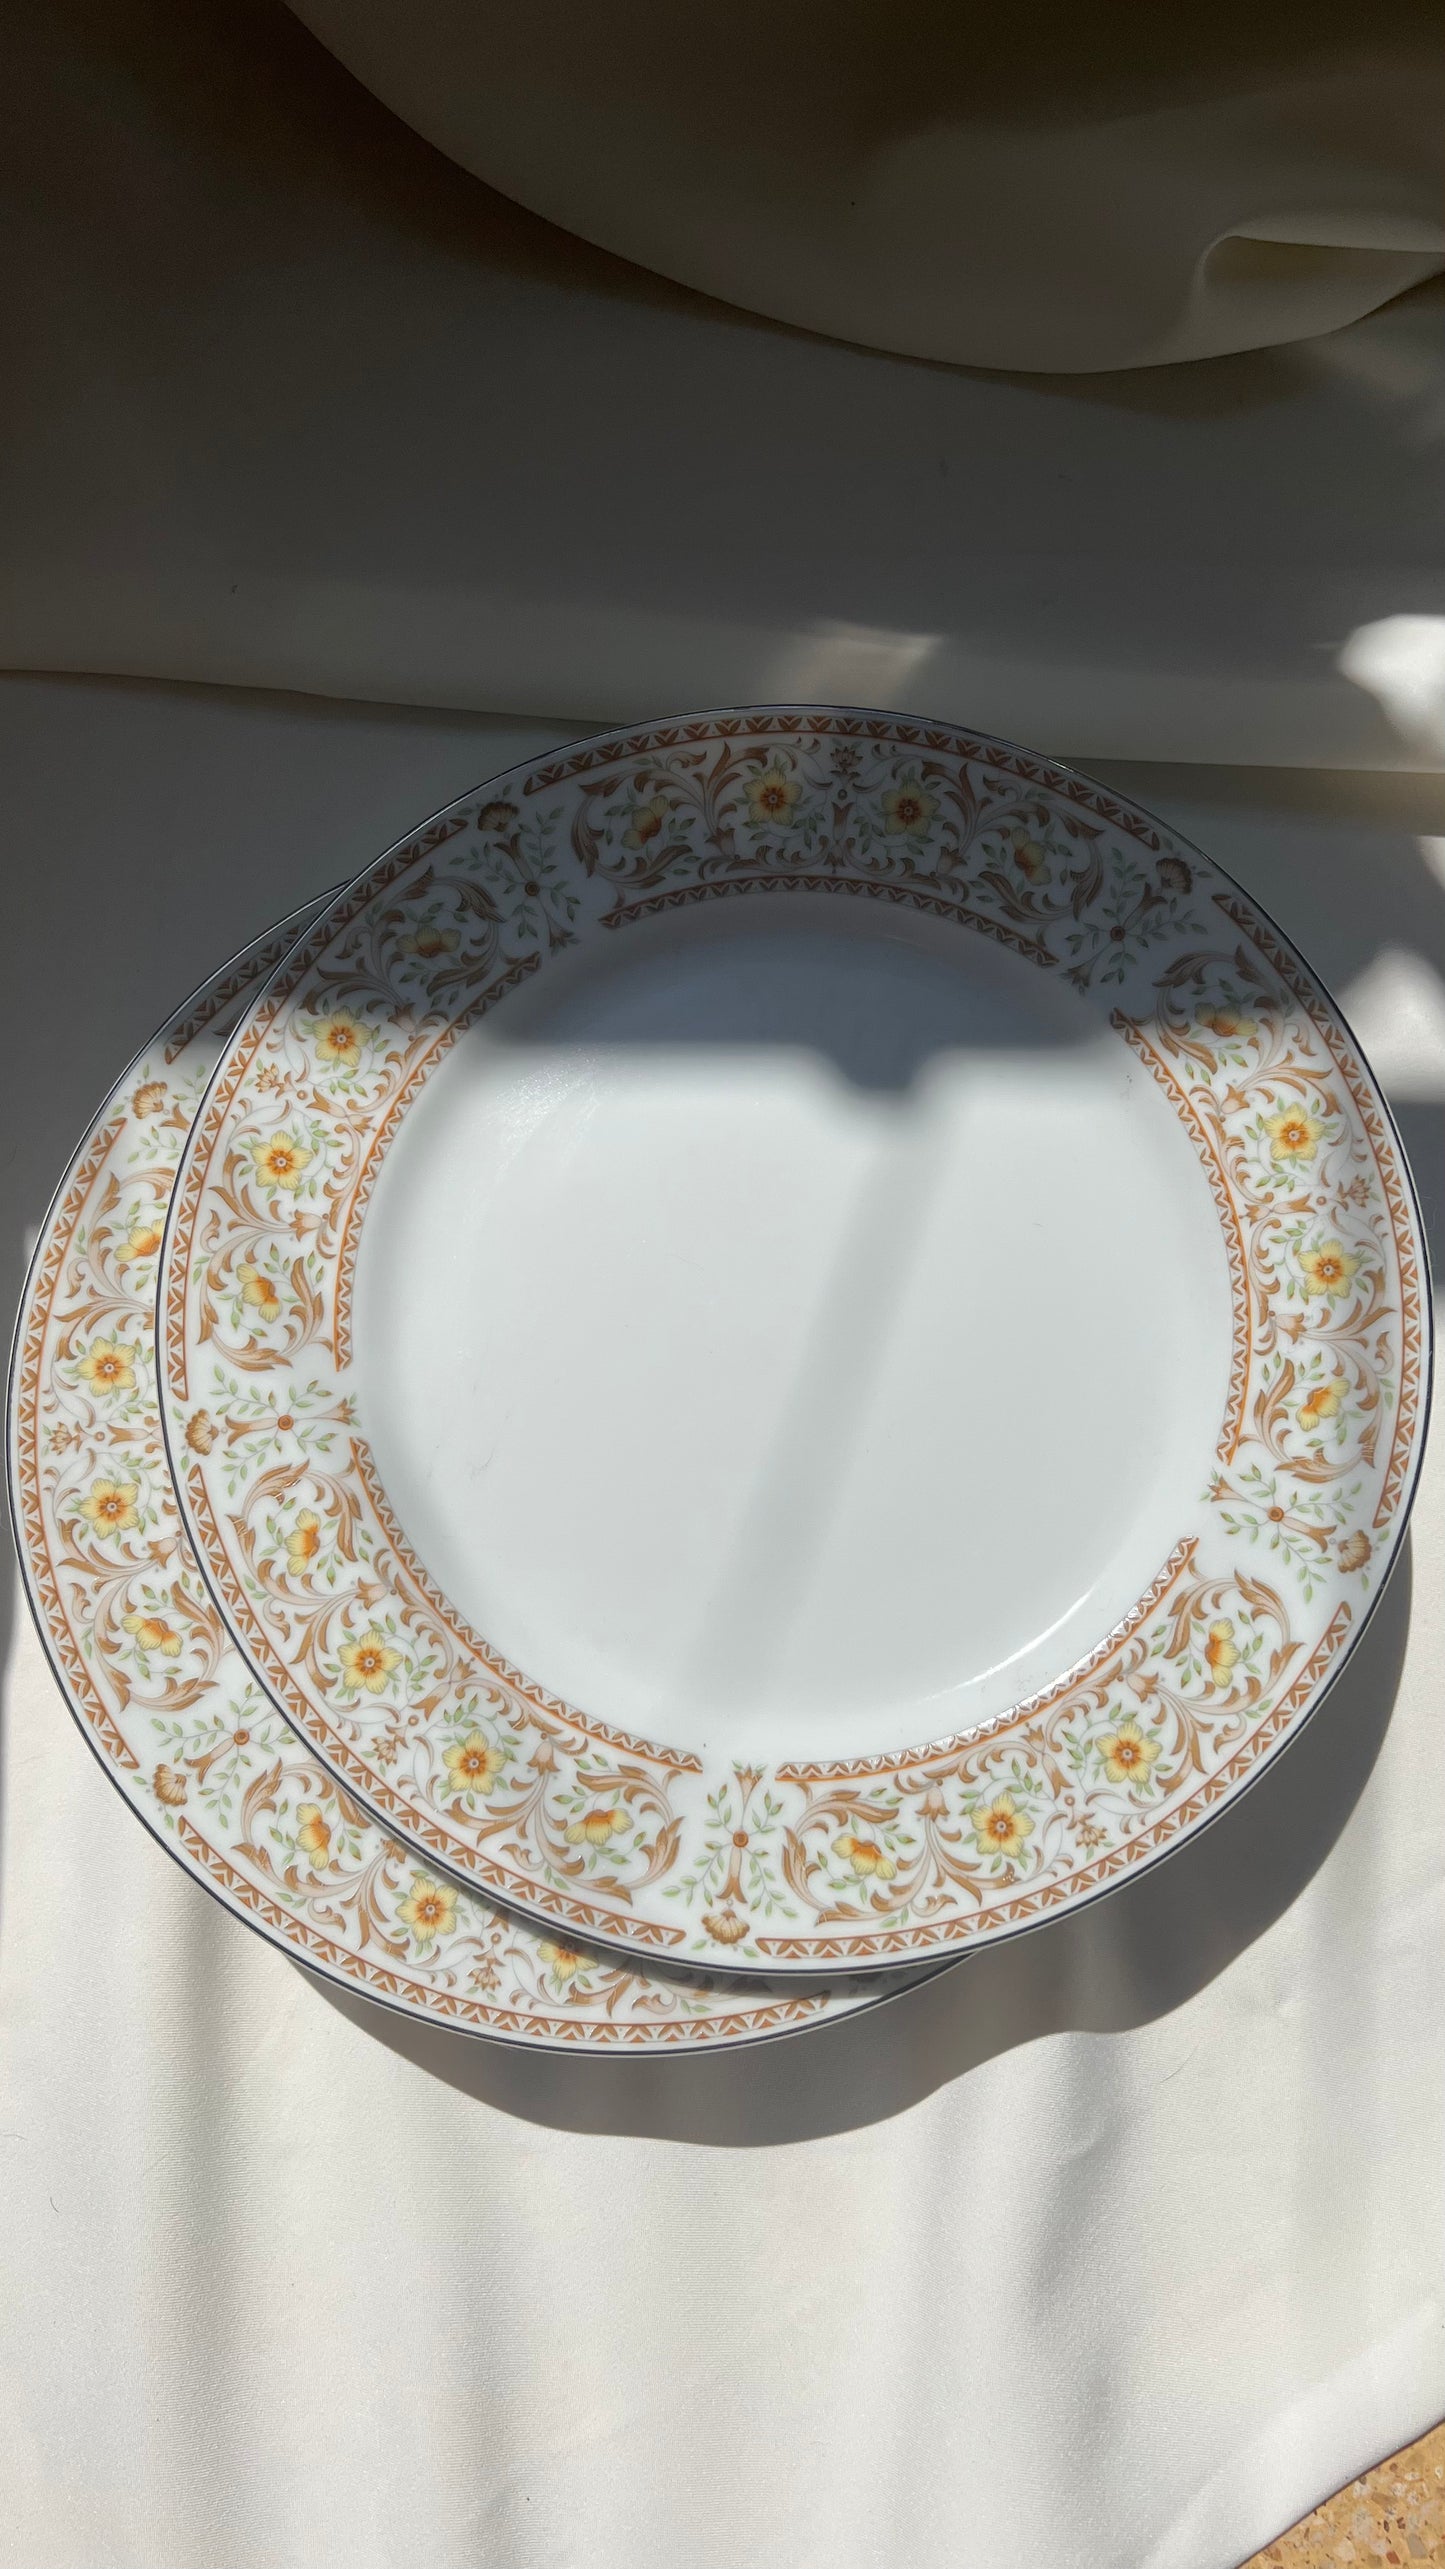 Main plate | צלחות עיקרית